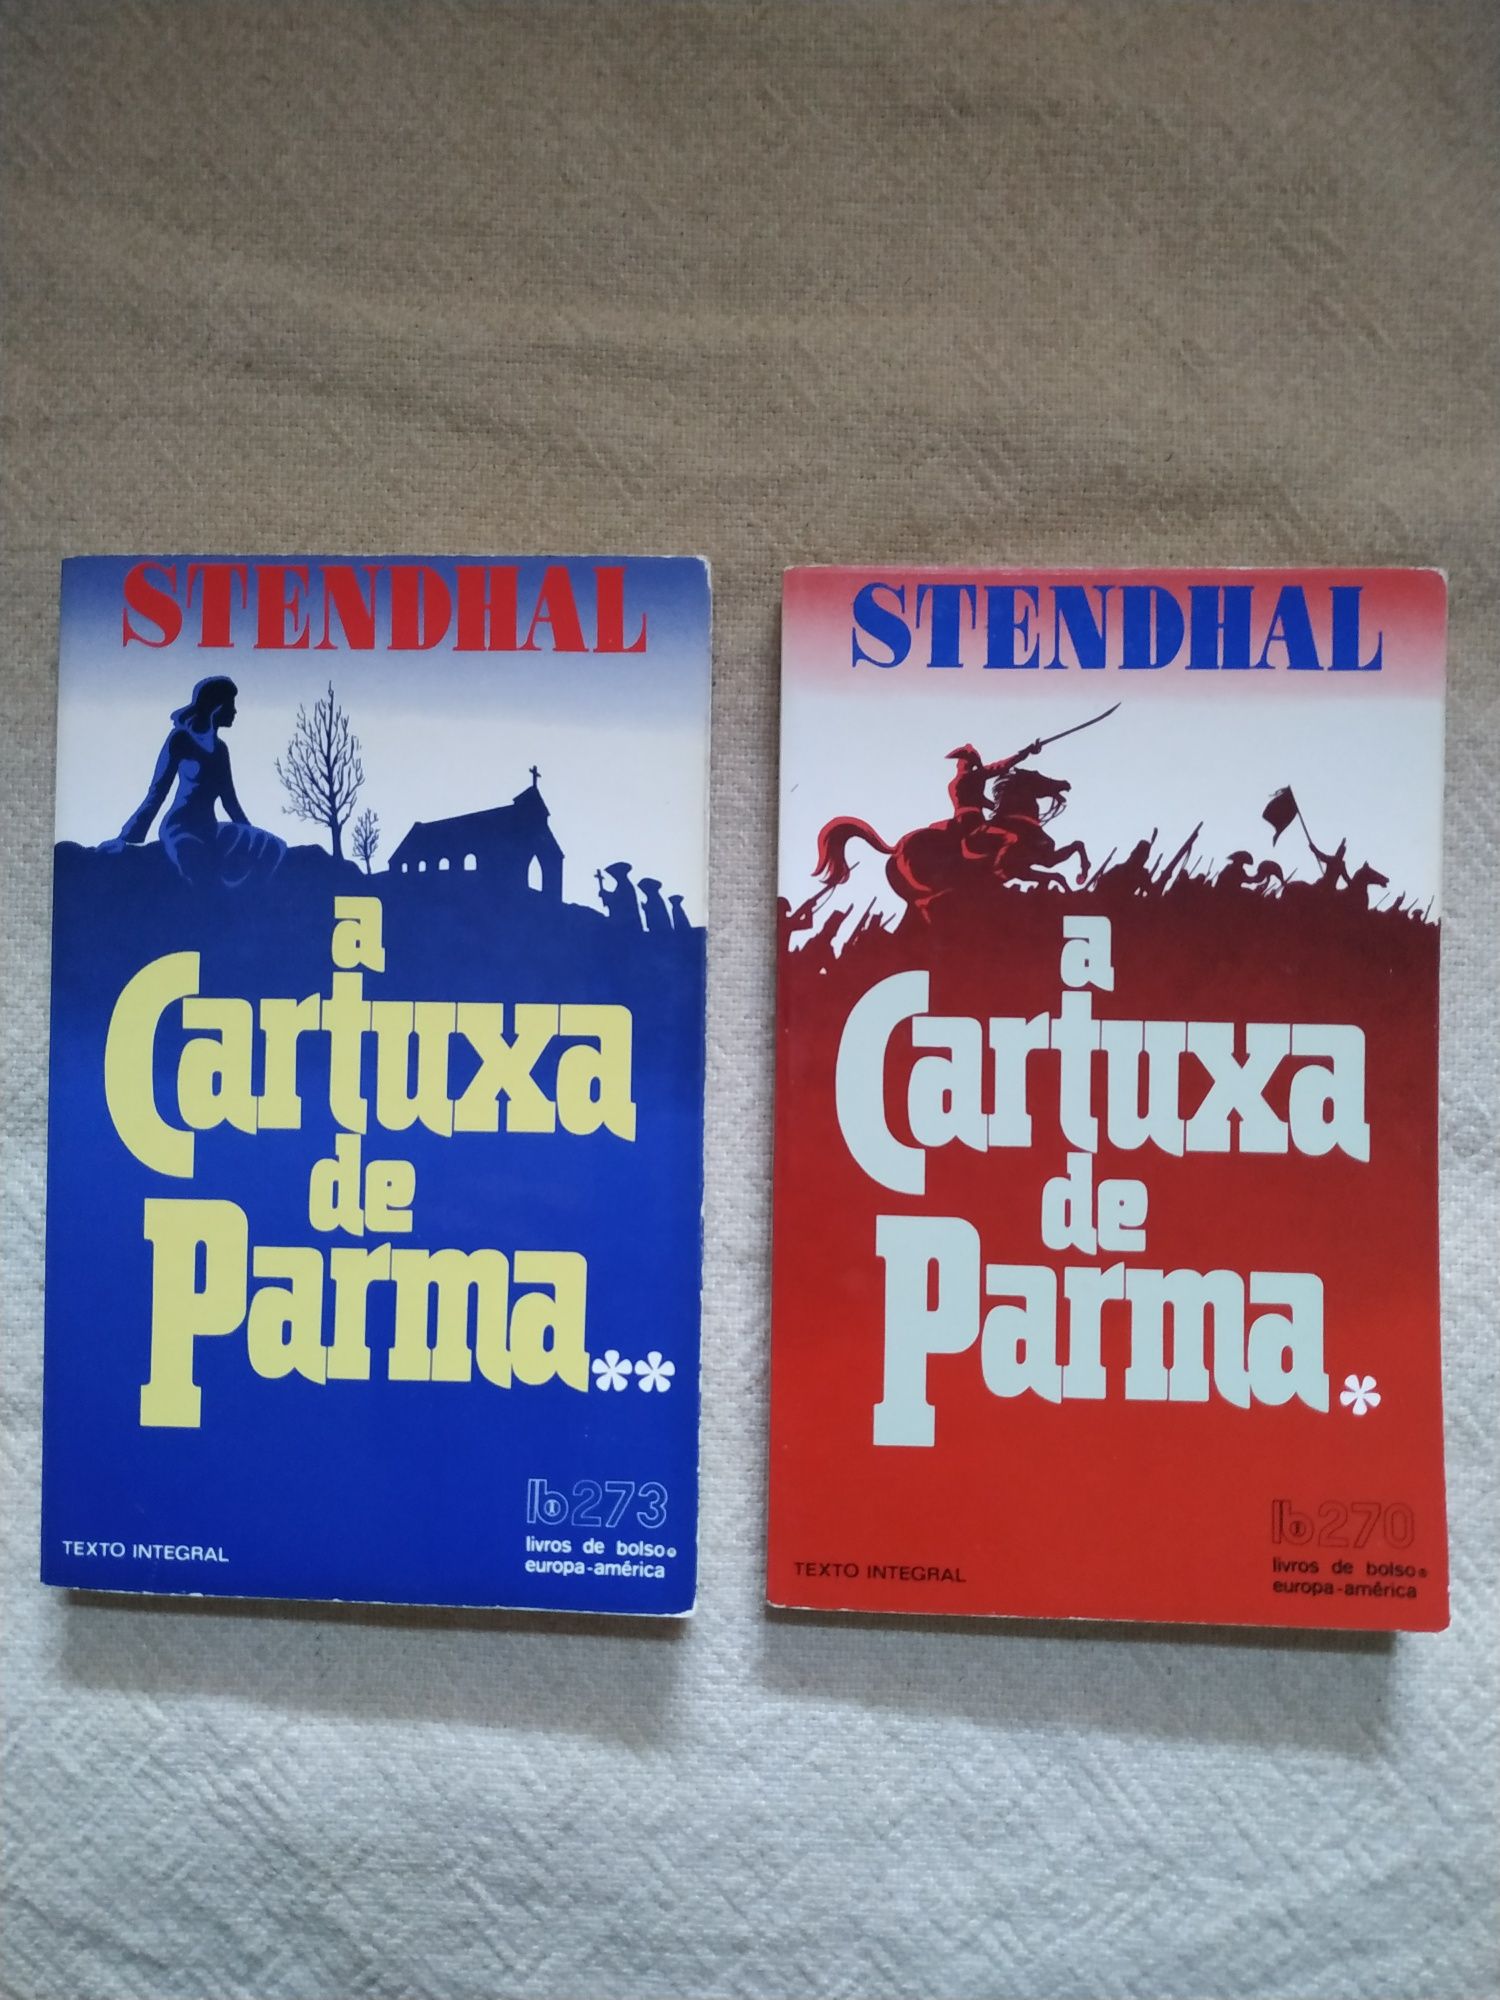 A Cartuxa de Parma Stendhal